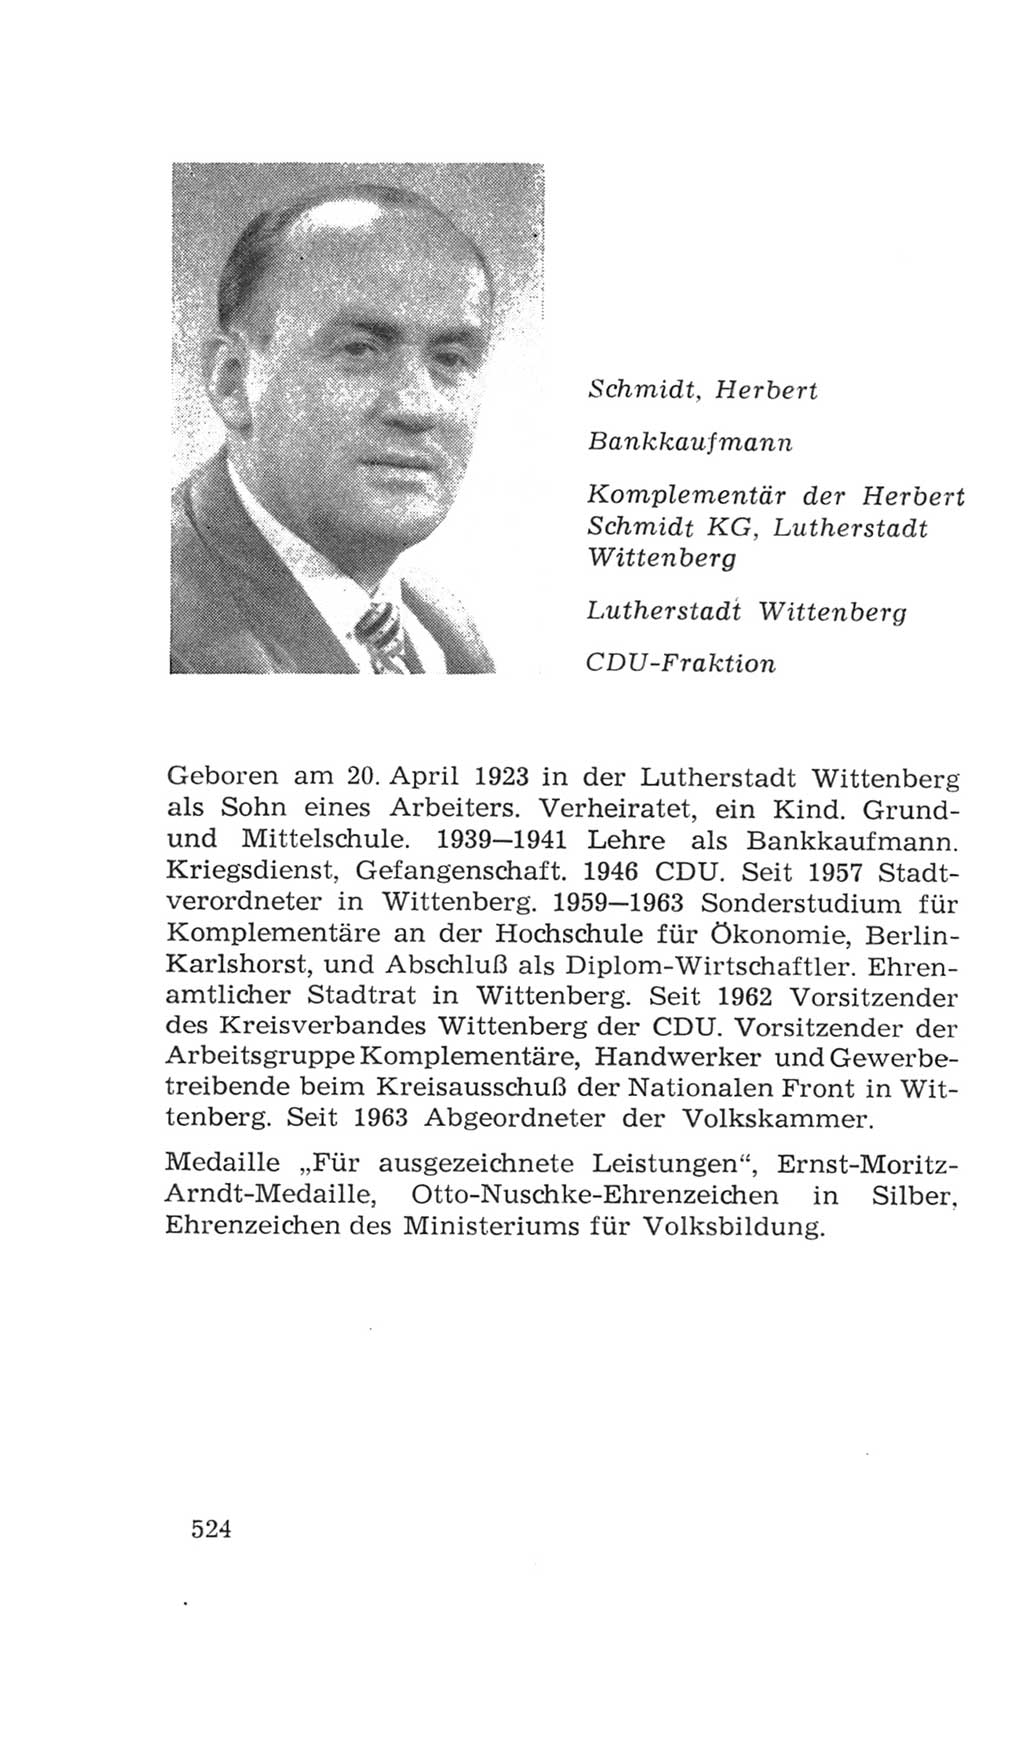 Volkskammer (VK) der Deutschen Demokratischen Republik (DDR), 4. Wahlperiode 1963-1967, Seite 524 (VK. DDR 4. WP. 1963-1967, S. 524)